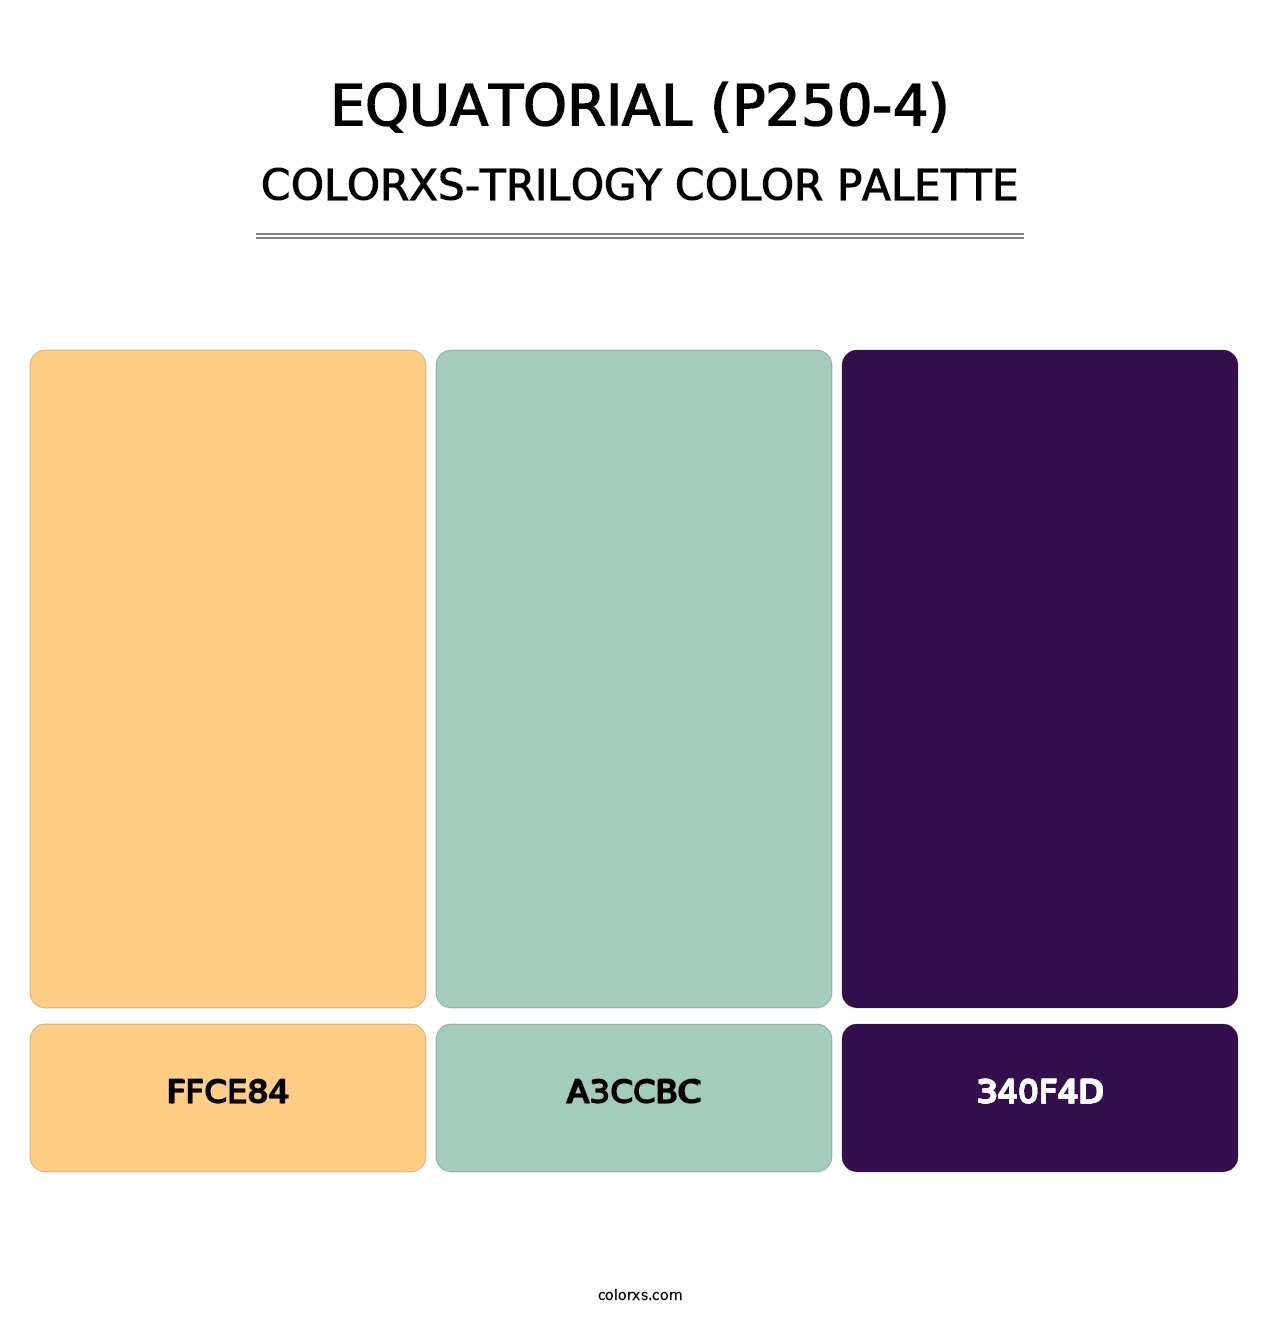 Equatorial (P250-4) - Colorxs Trilogy Palette